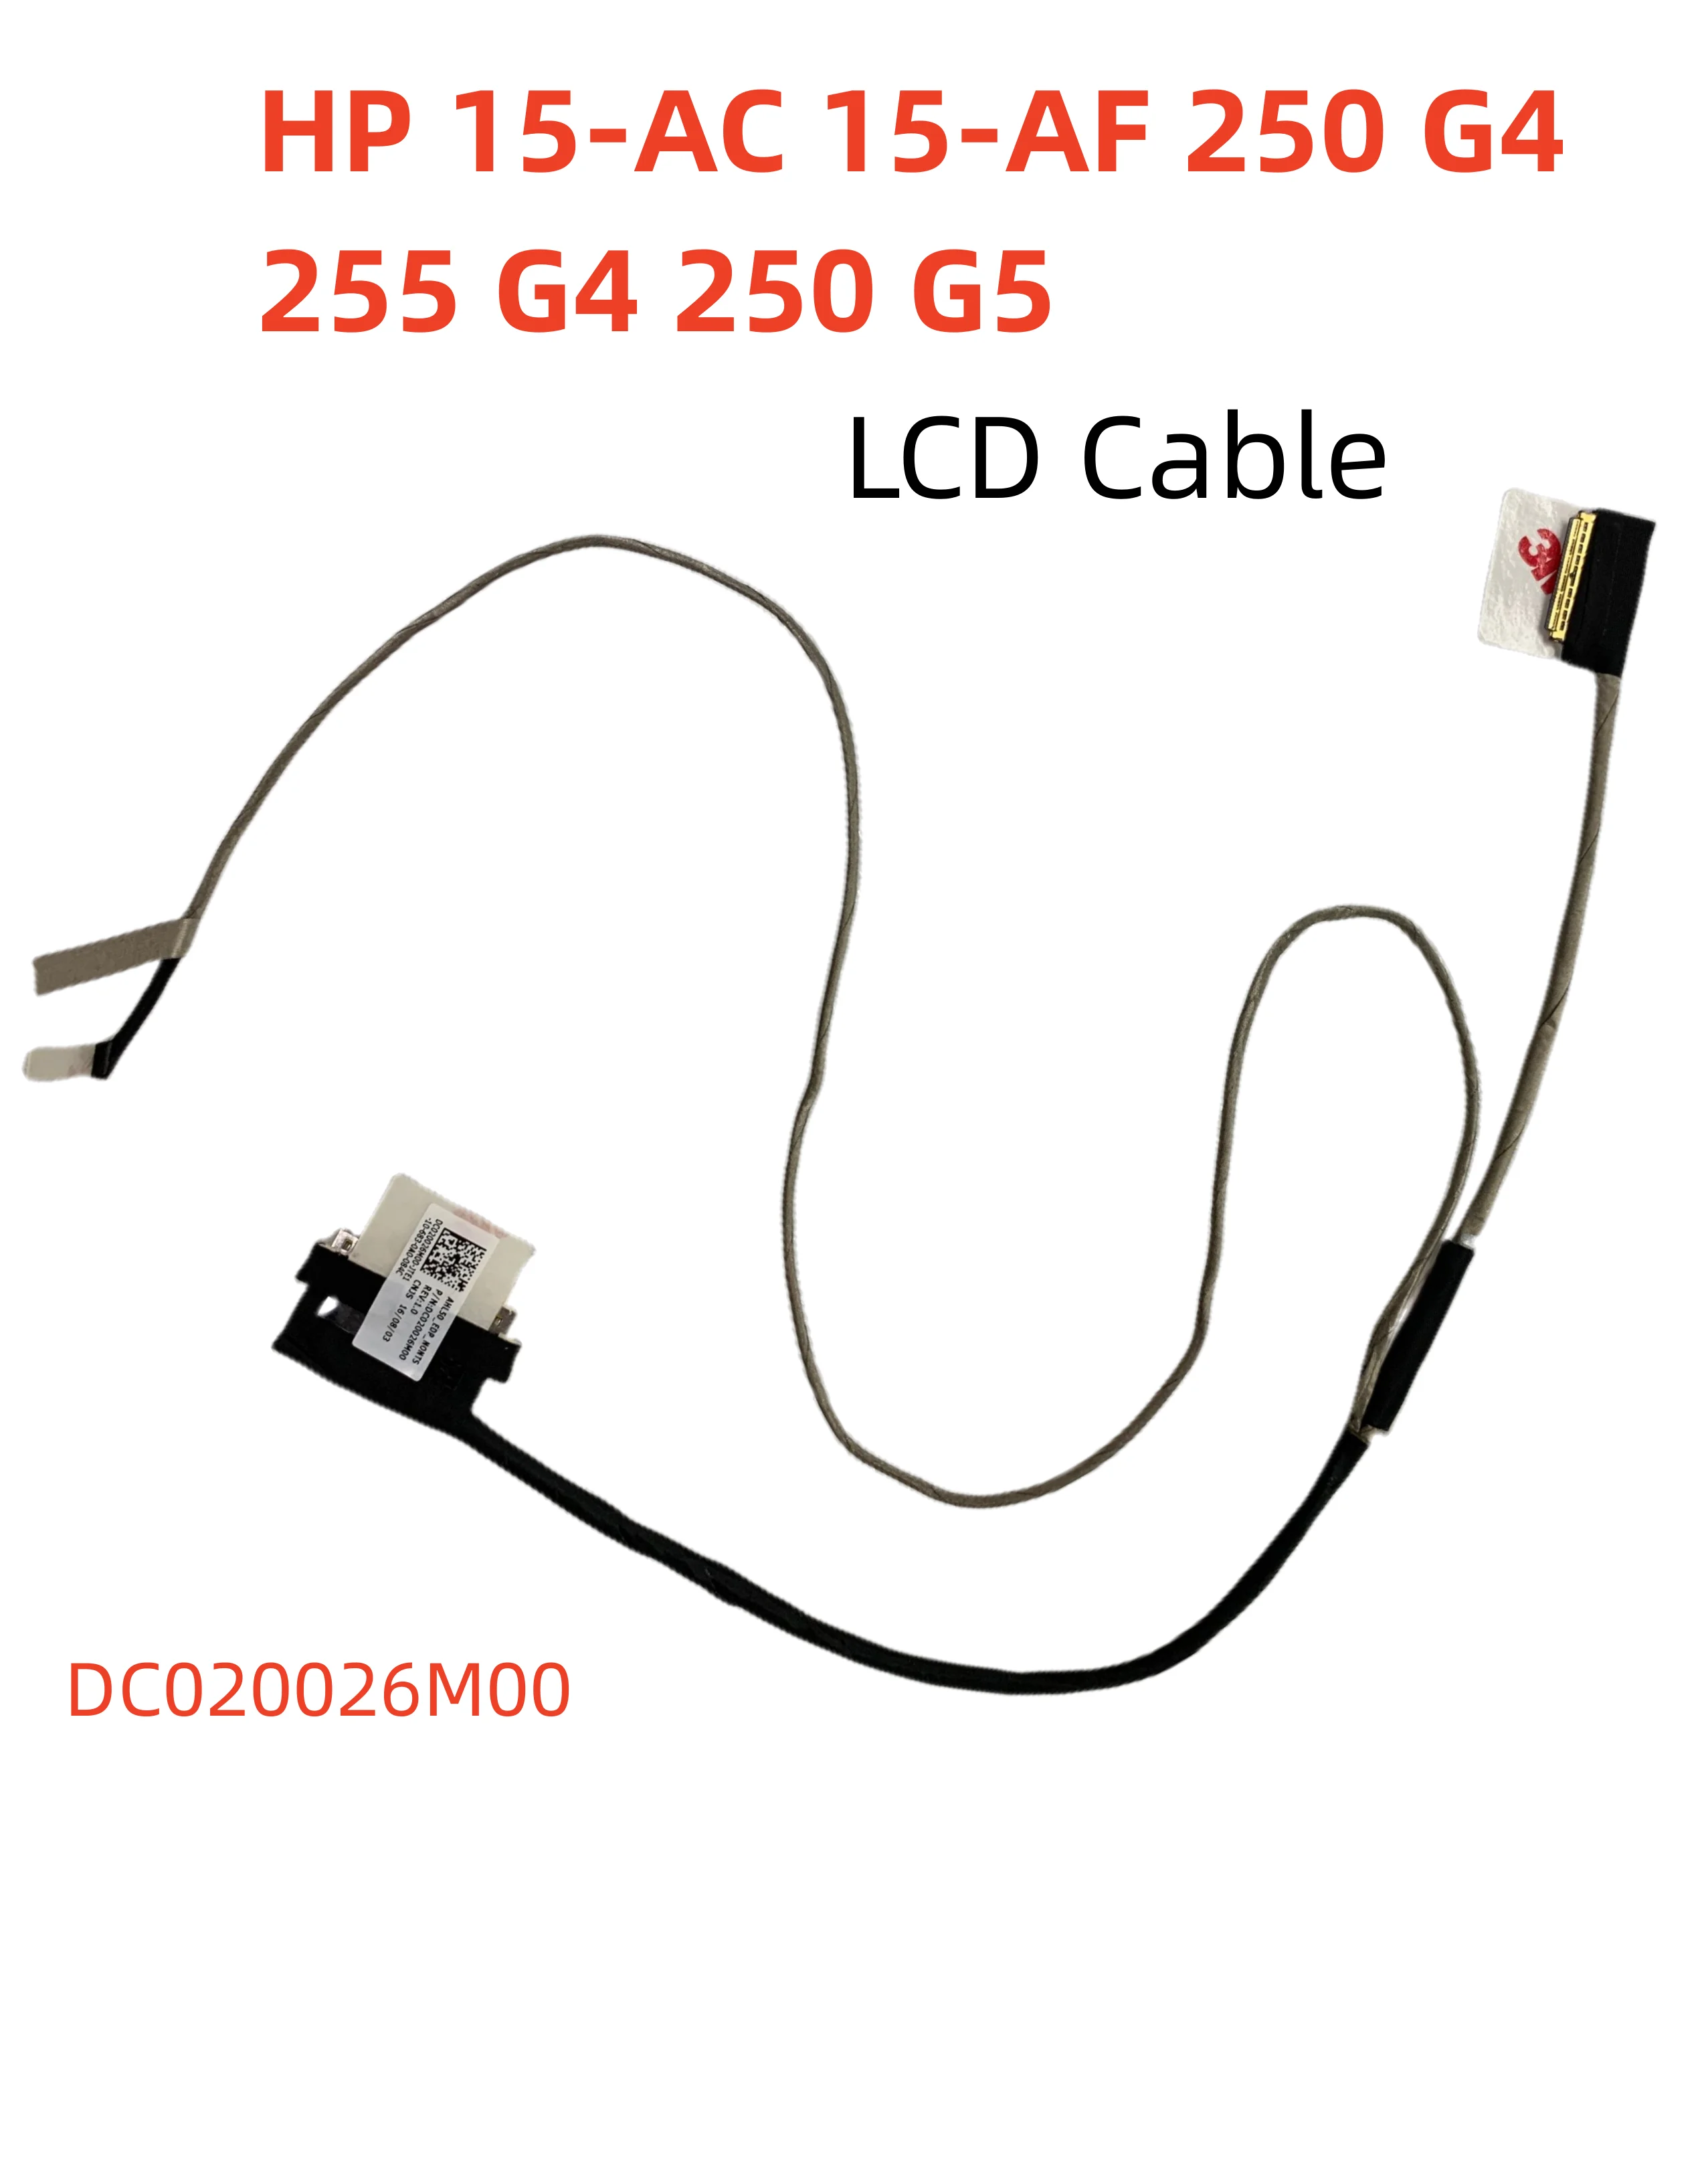 Новый кабель для ЖК-экрана HP 15-AC 15-AF 250 G4 250 G5 255 G4 Гибкий Ленточный Кабель 864124-001 DC020026M00